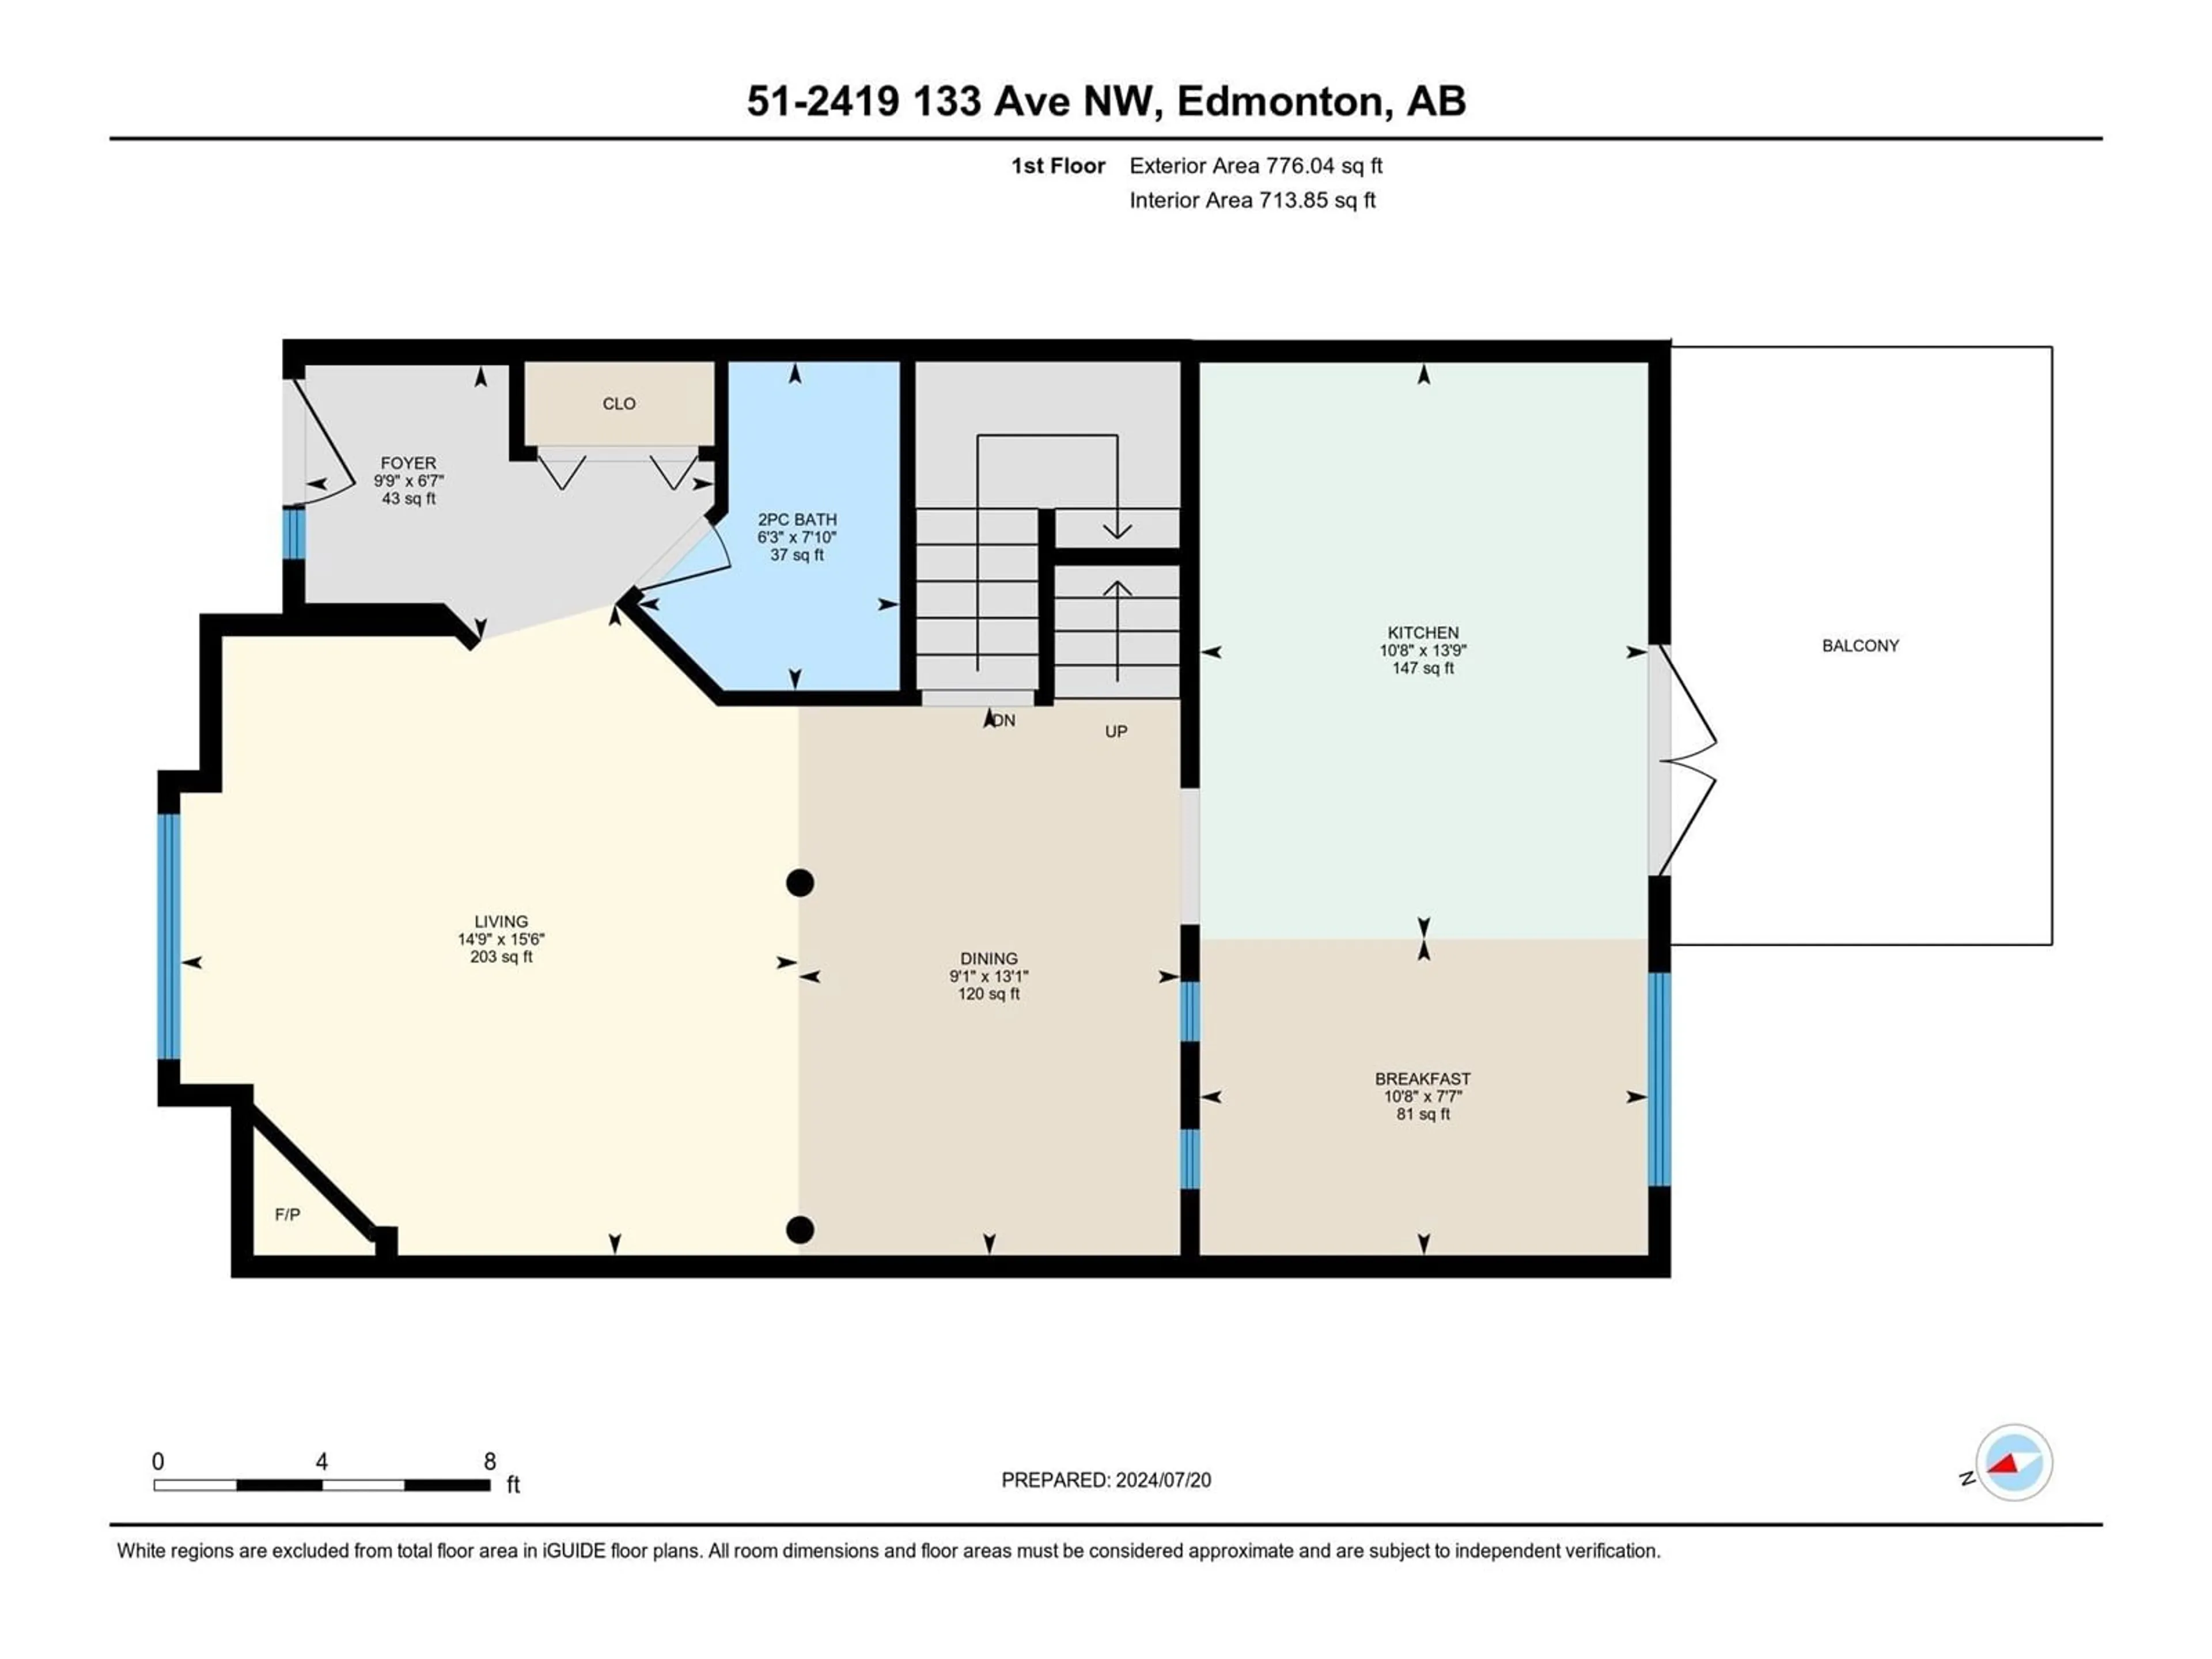 Floor plan for #51 2419 133 AV NW, Edmonton Alberta T5A5A5